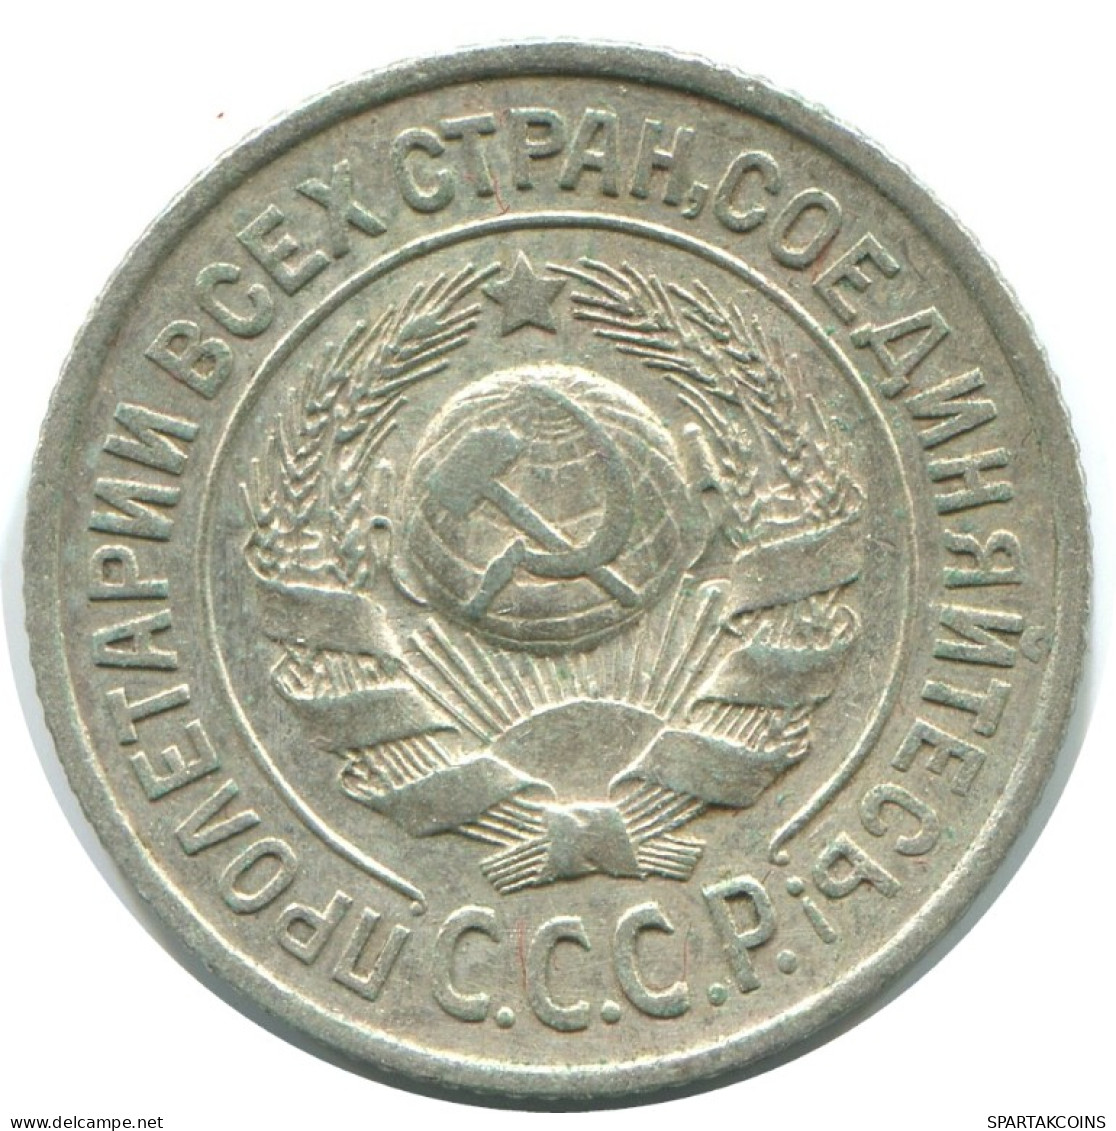 15 KOPEKS 1925 RUSSLAND RUSSIA USSR SILBER Münze HIGH GRADE #AF263.4.D.A - Rusia